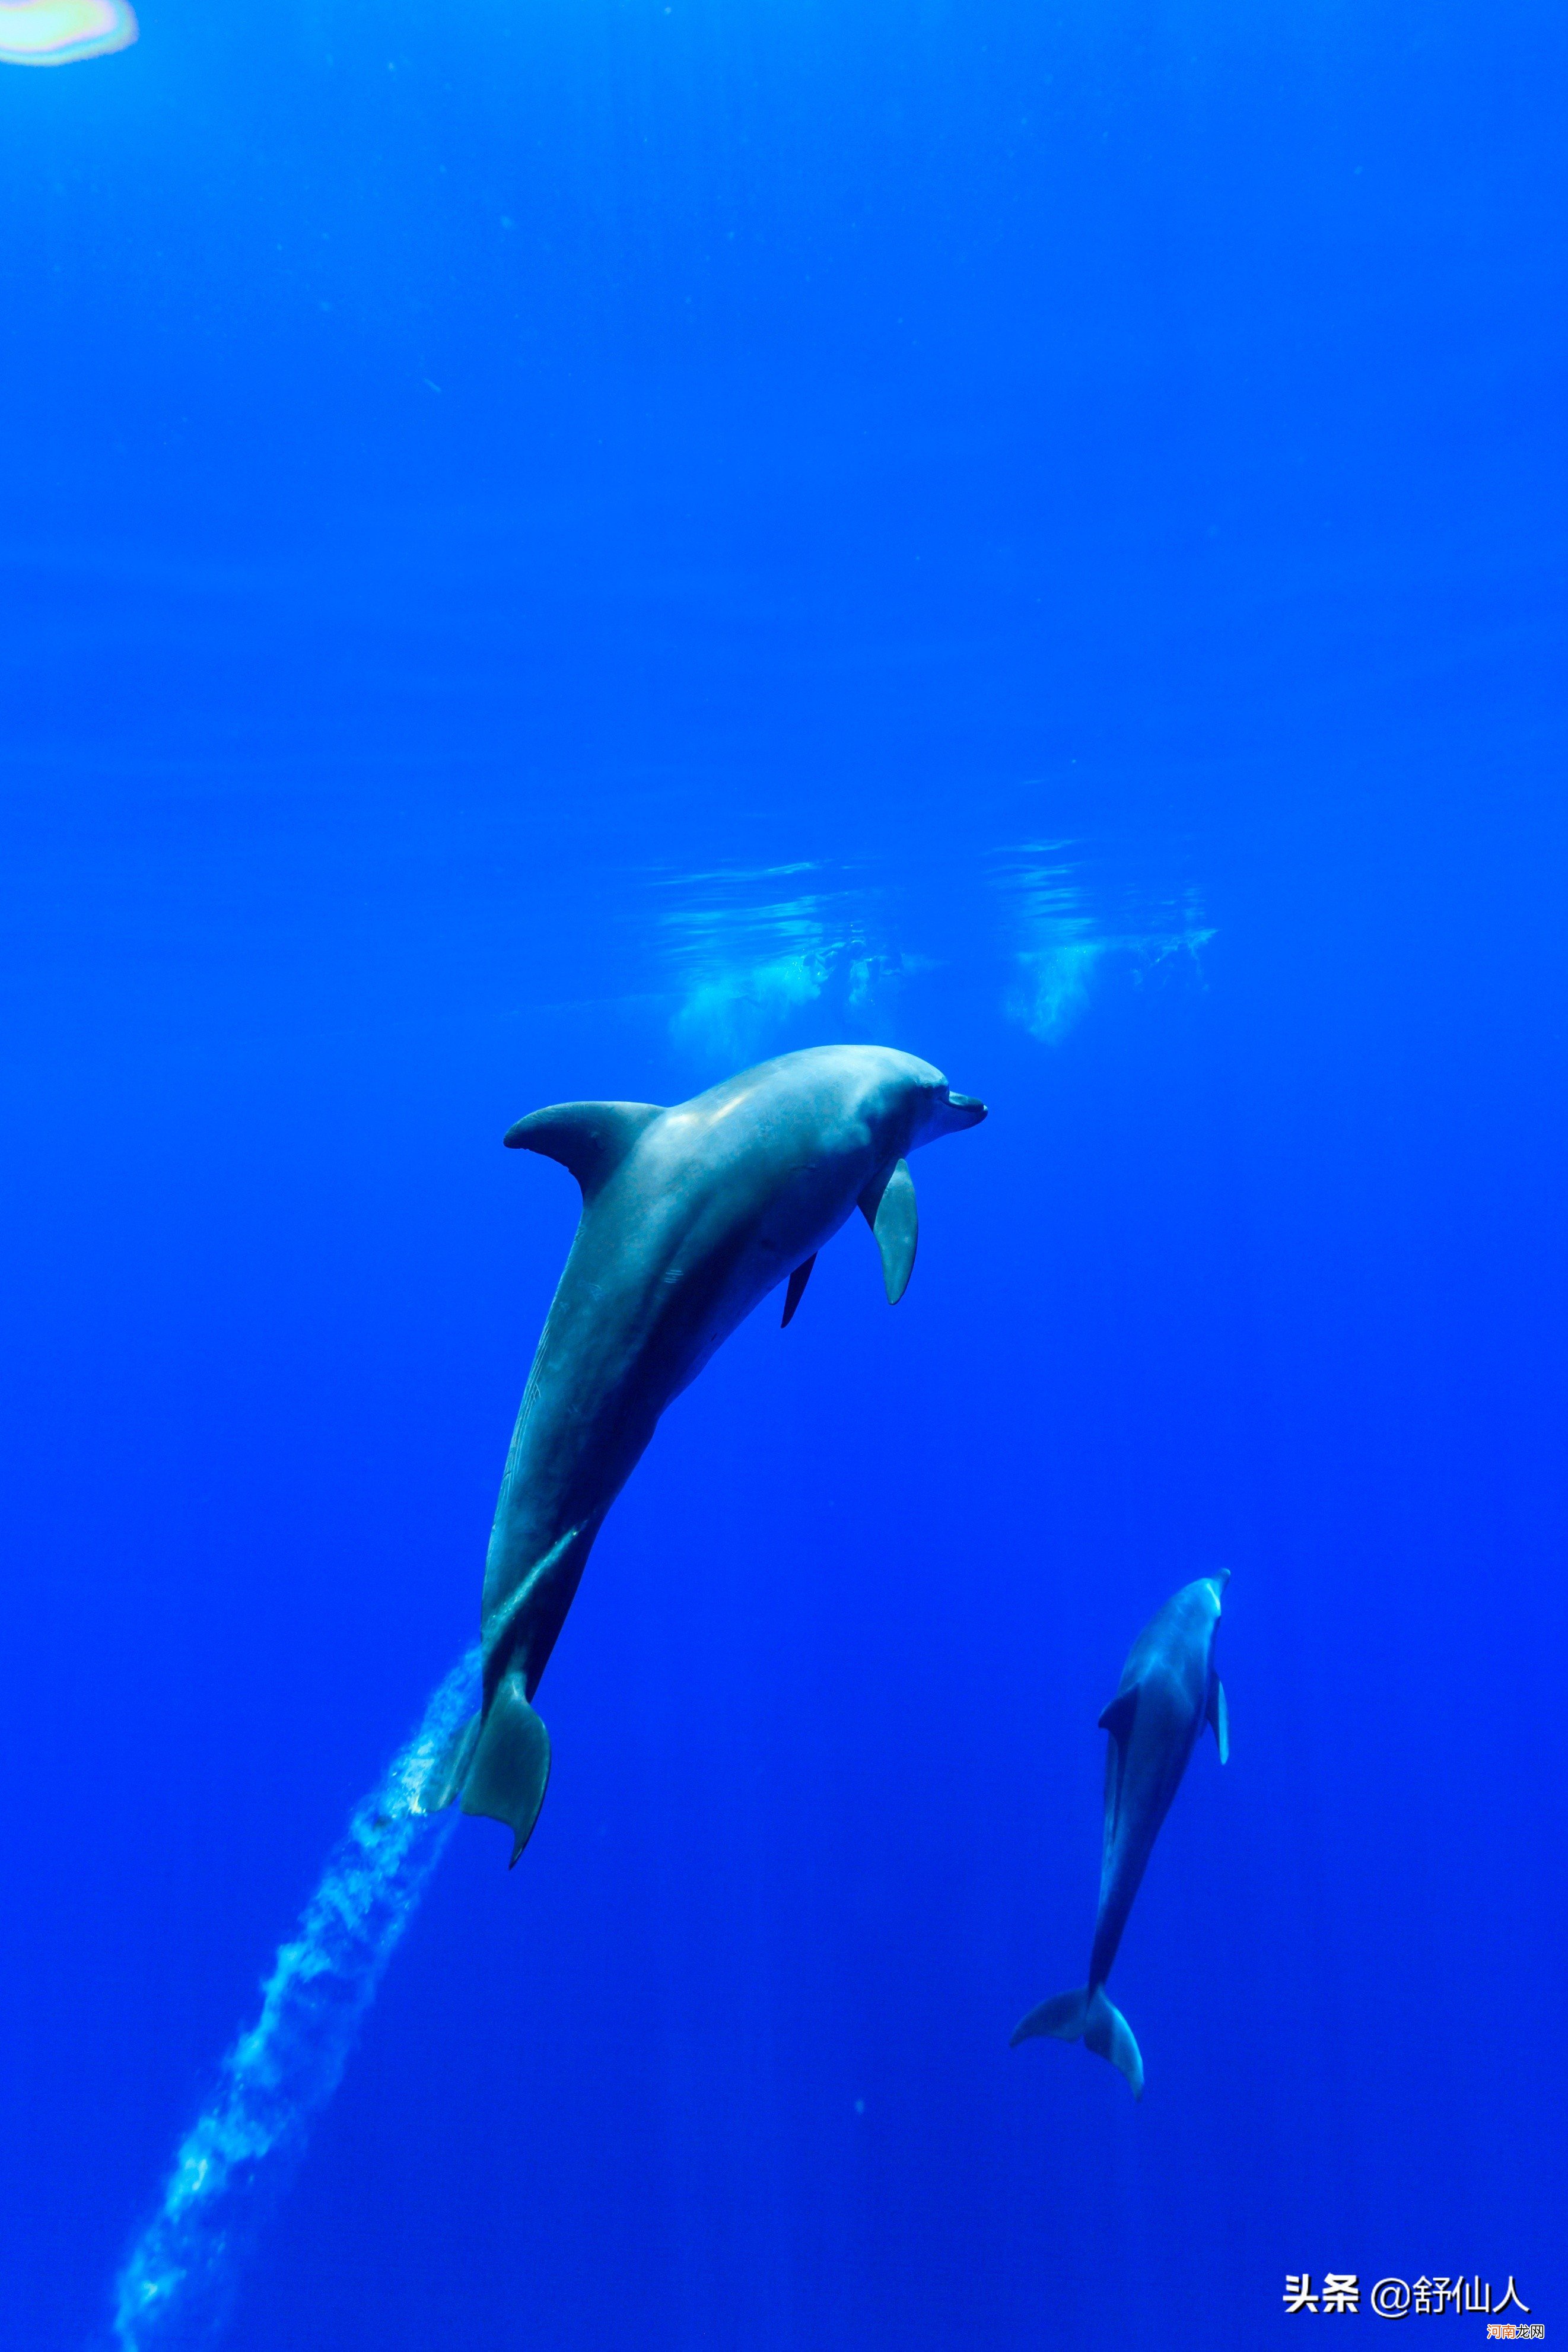 鲸鱼和海豚作为哺乳动物如何睡觉 海豚和鲸鱼是哺乳动物